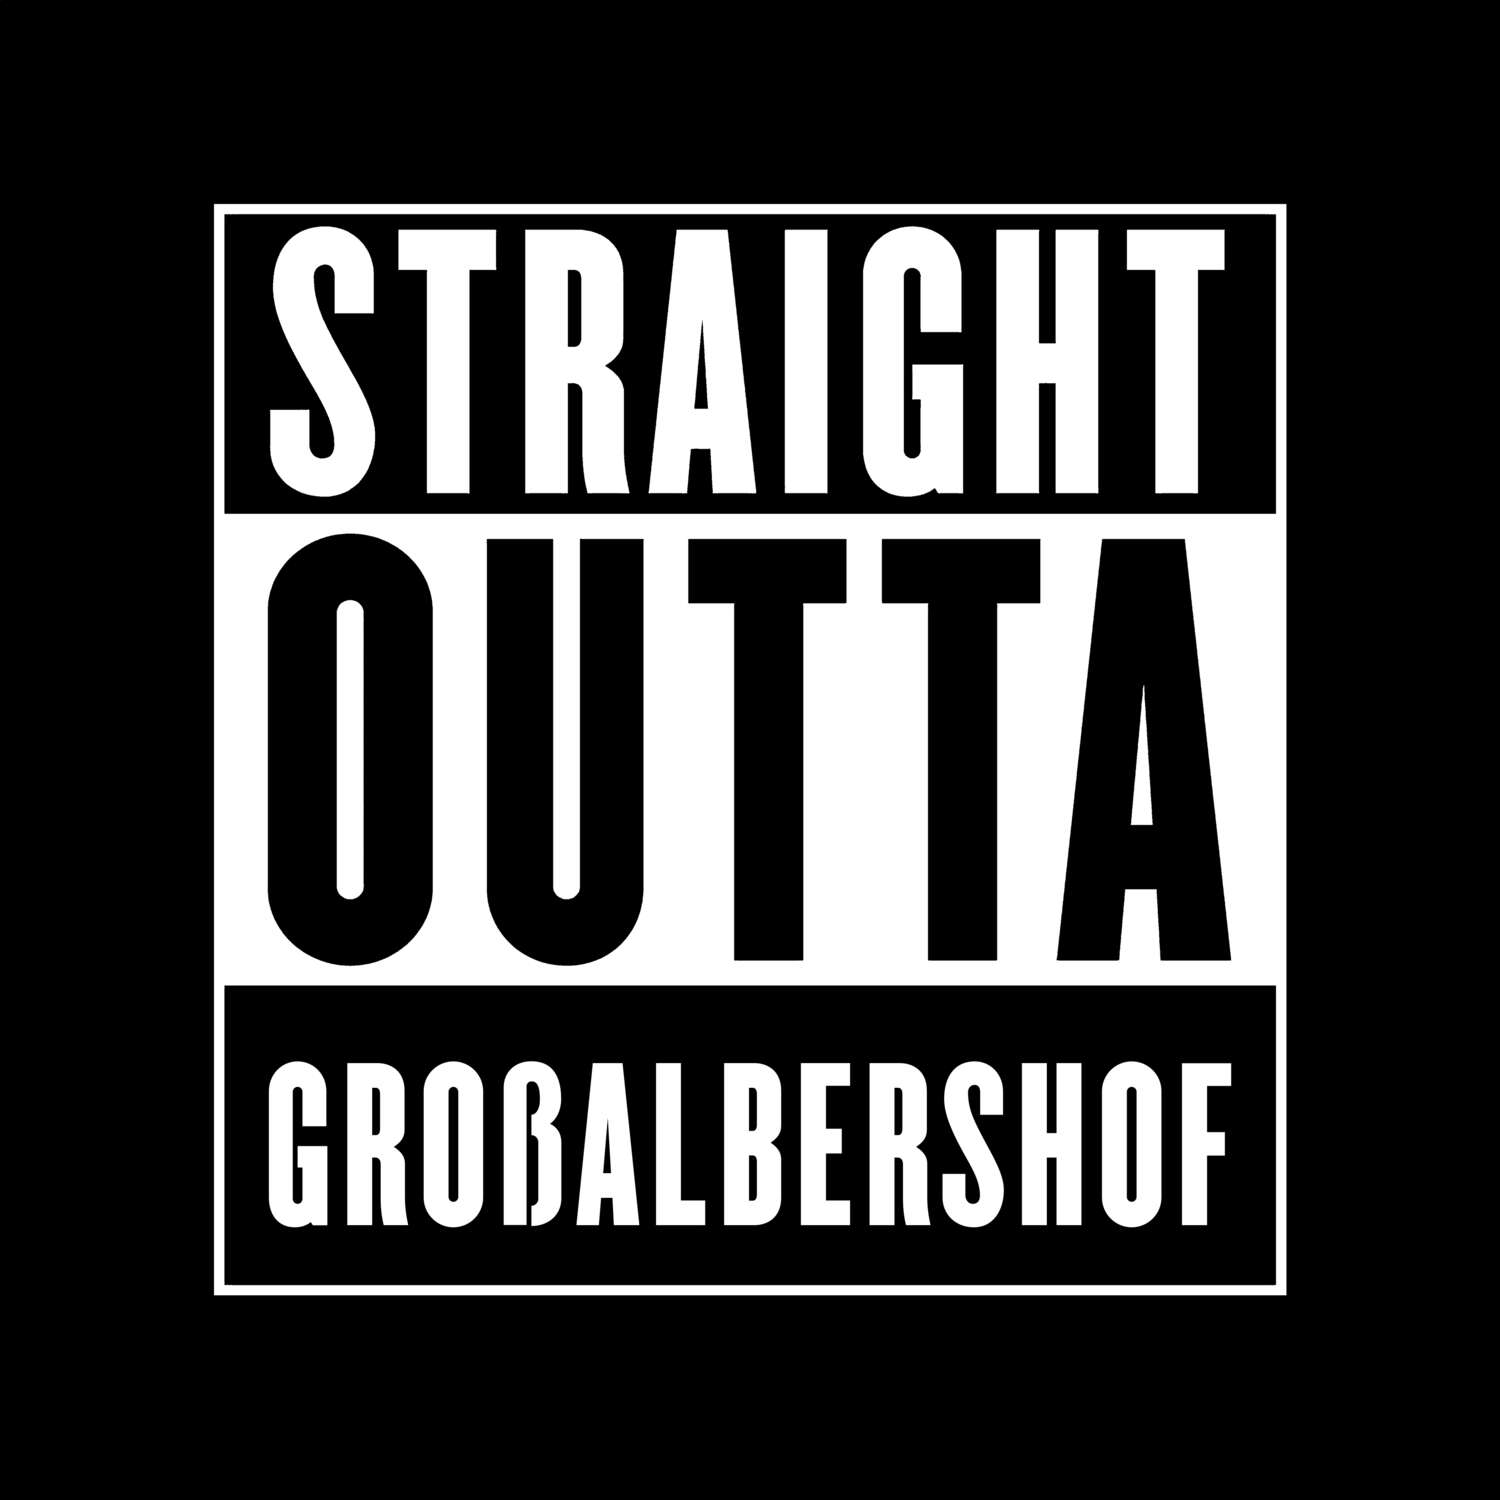 Großalbershof T-Shirt »Straight Outta«